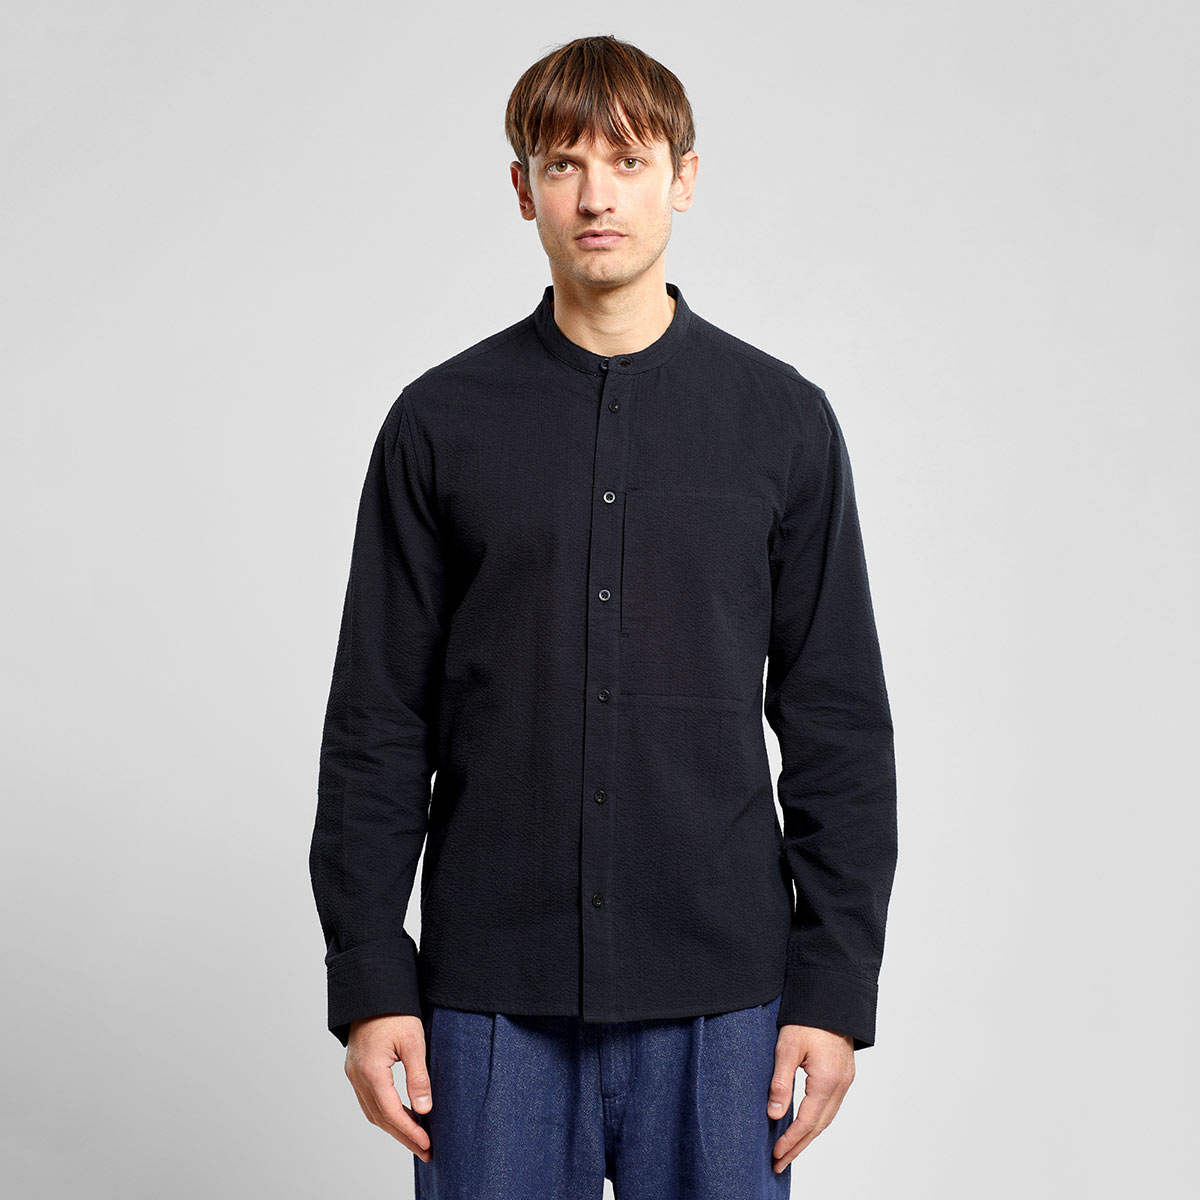 Schwarzes Hemd aus 100% Bio-Baumwolle in Seersucker Webung mit versetckter seitlicher Einschubtasche auf der linken Brustseite, Stehkragen und durchgehender Knopfleiste.